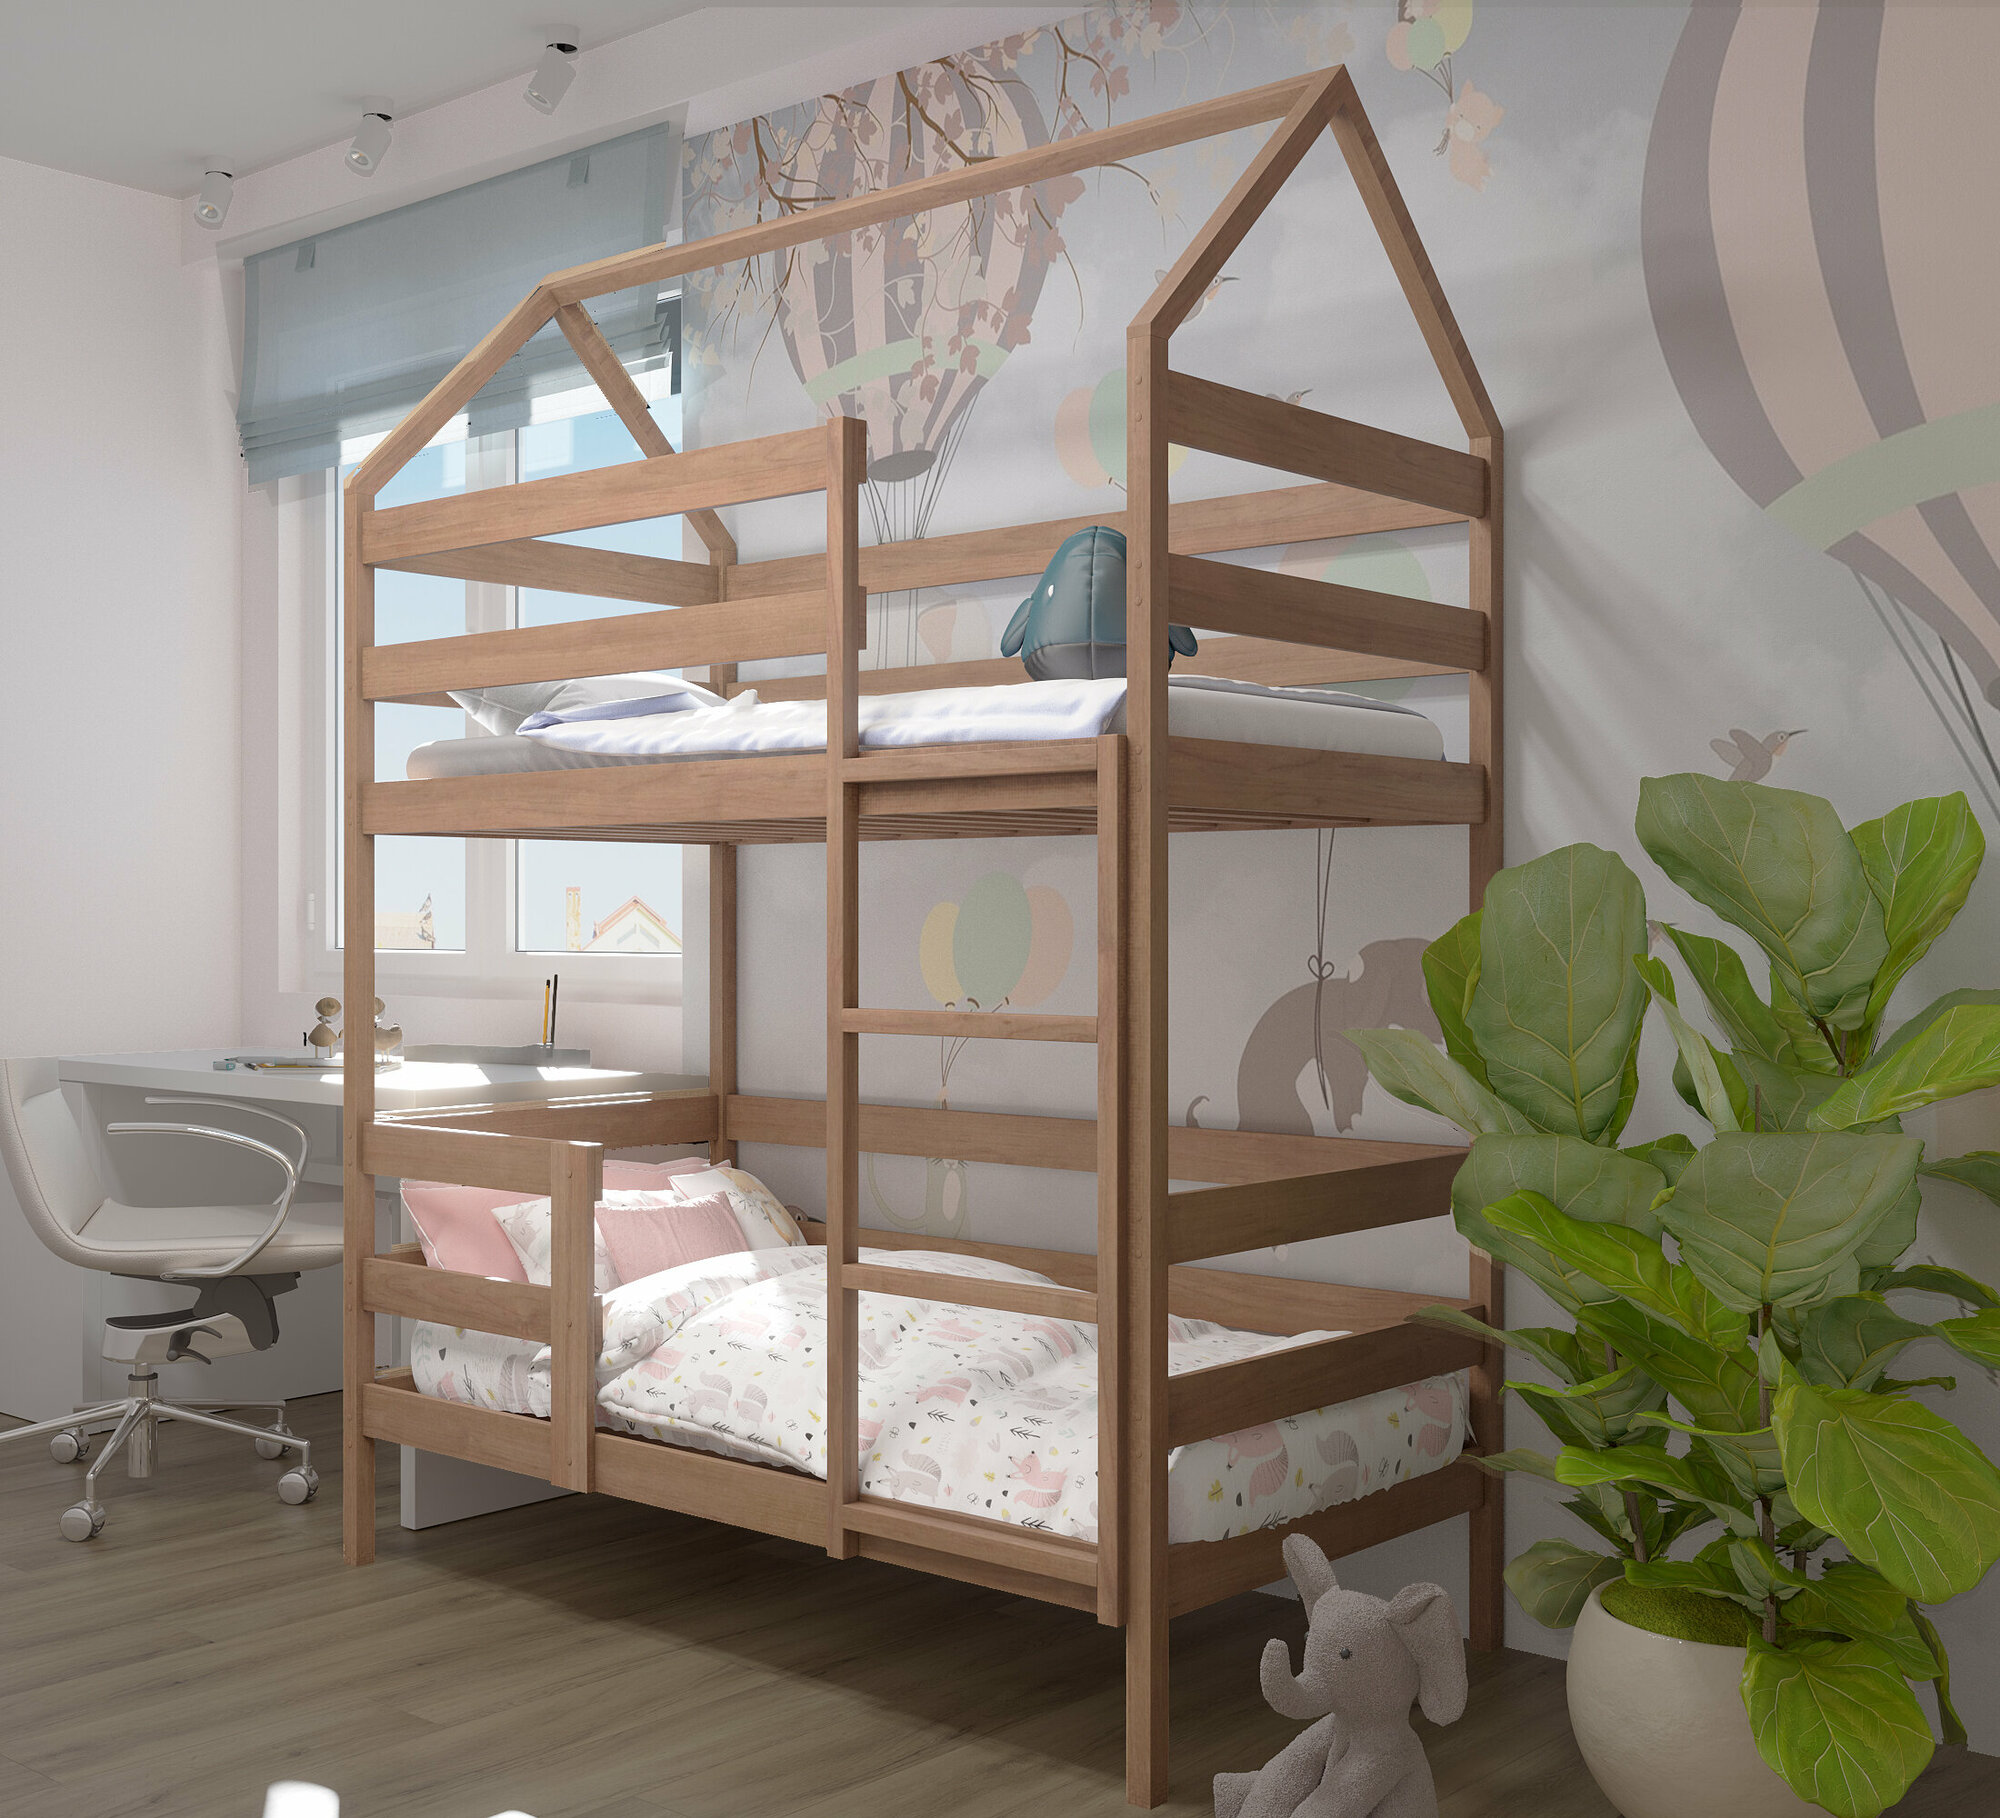 Кровать детская, подростковая "Двухъярусная-домик", спальное место 160х80, натуральный цвет, из массива